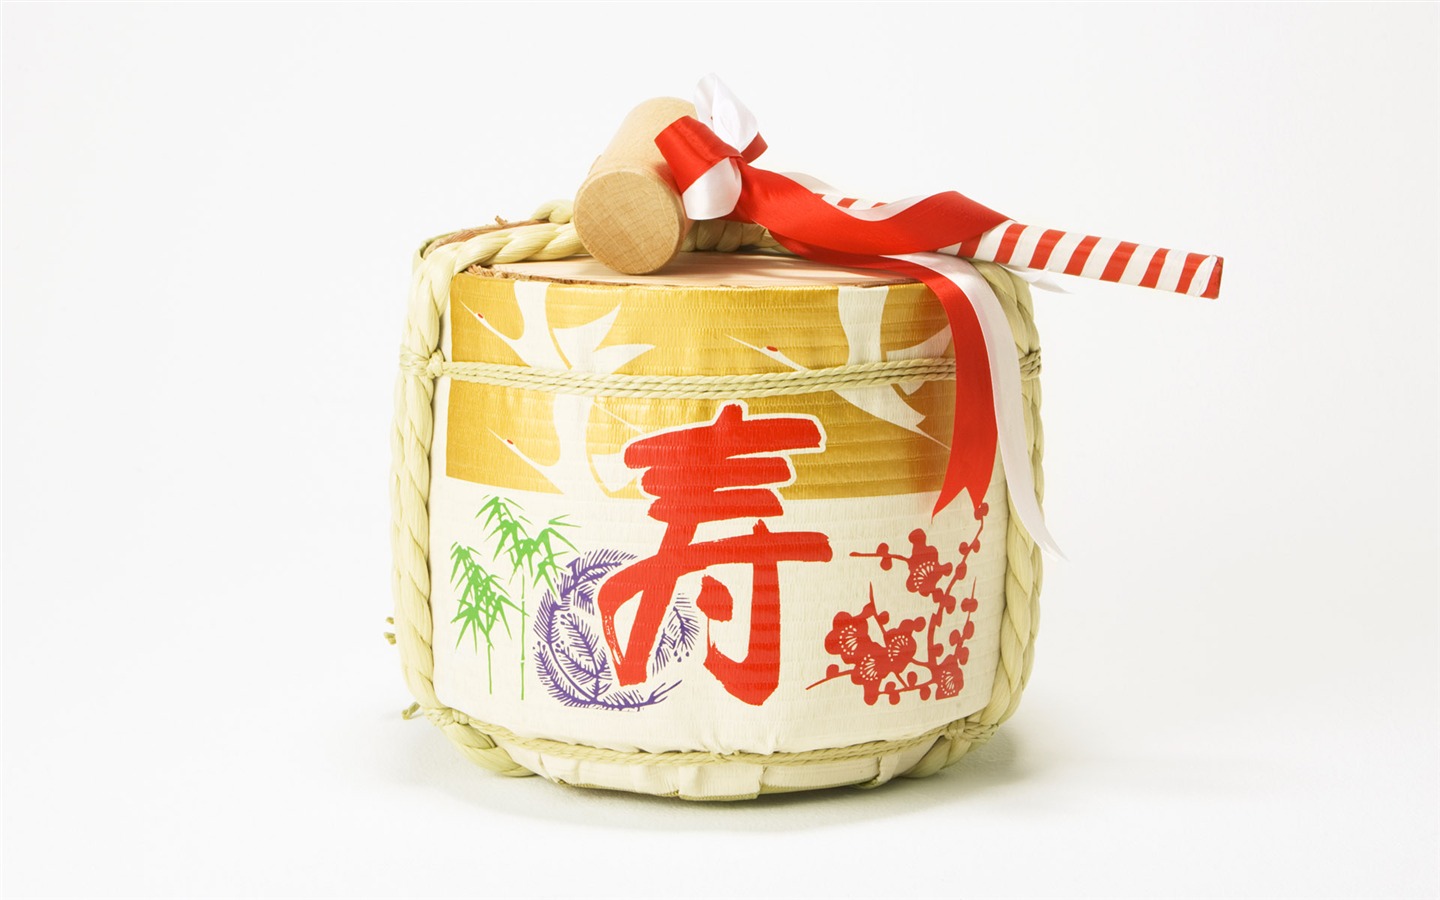 Fondos de año nuevo japonés Cultura (2) #12 - 1440x900